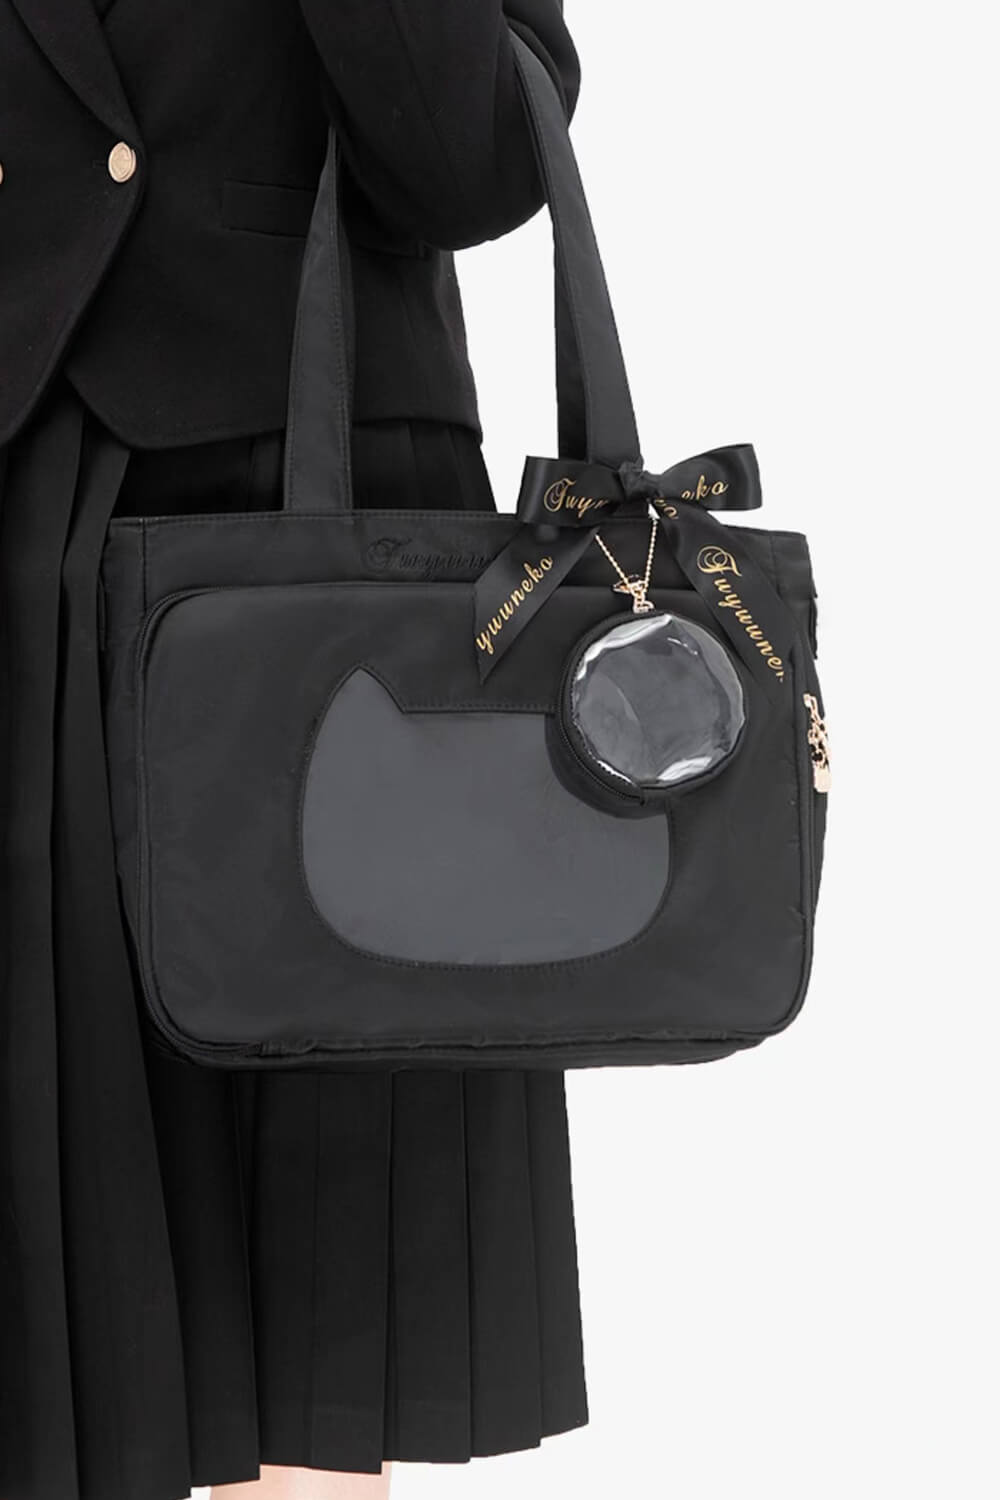 jk-steambun-ita-bag-cat-transparent-layer-pin-bag-with-silk-bow-and-small-bag-pendant